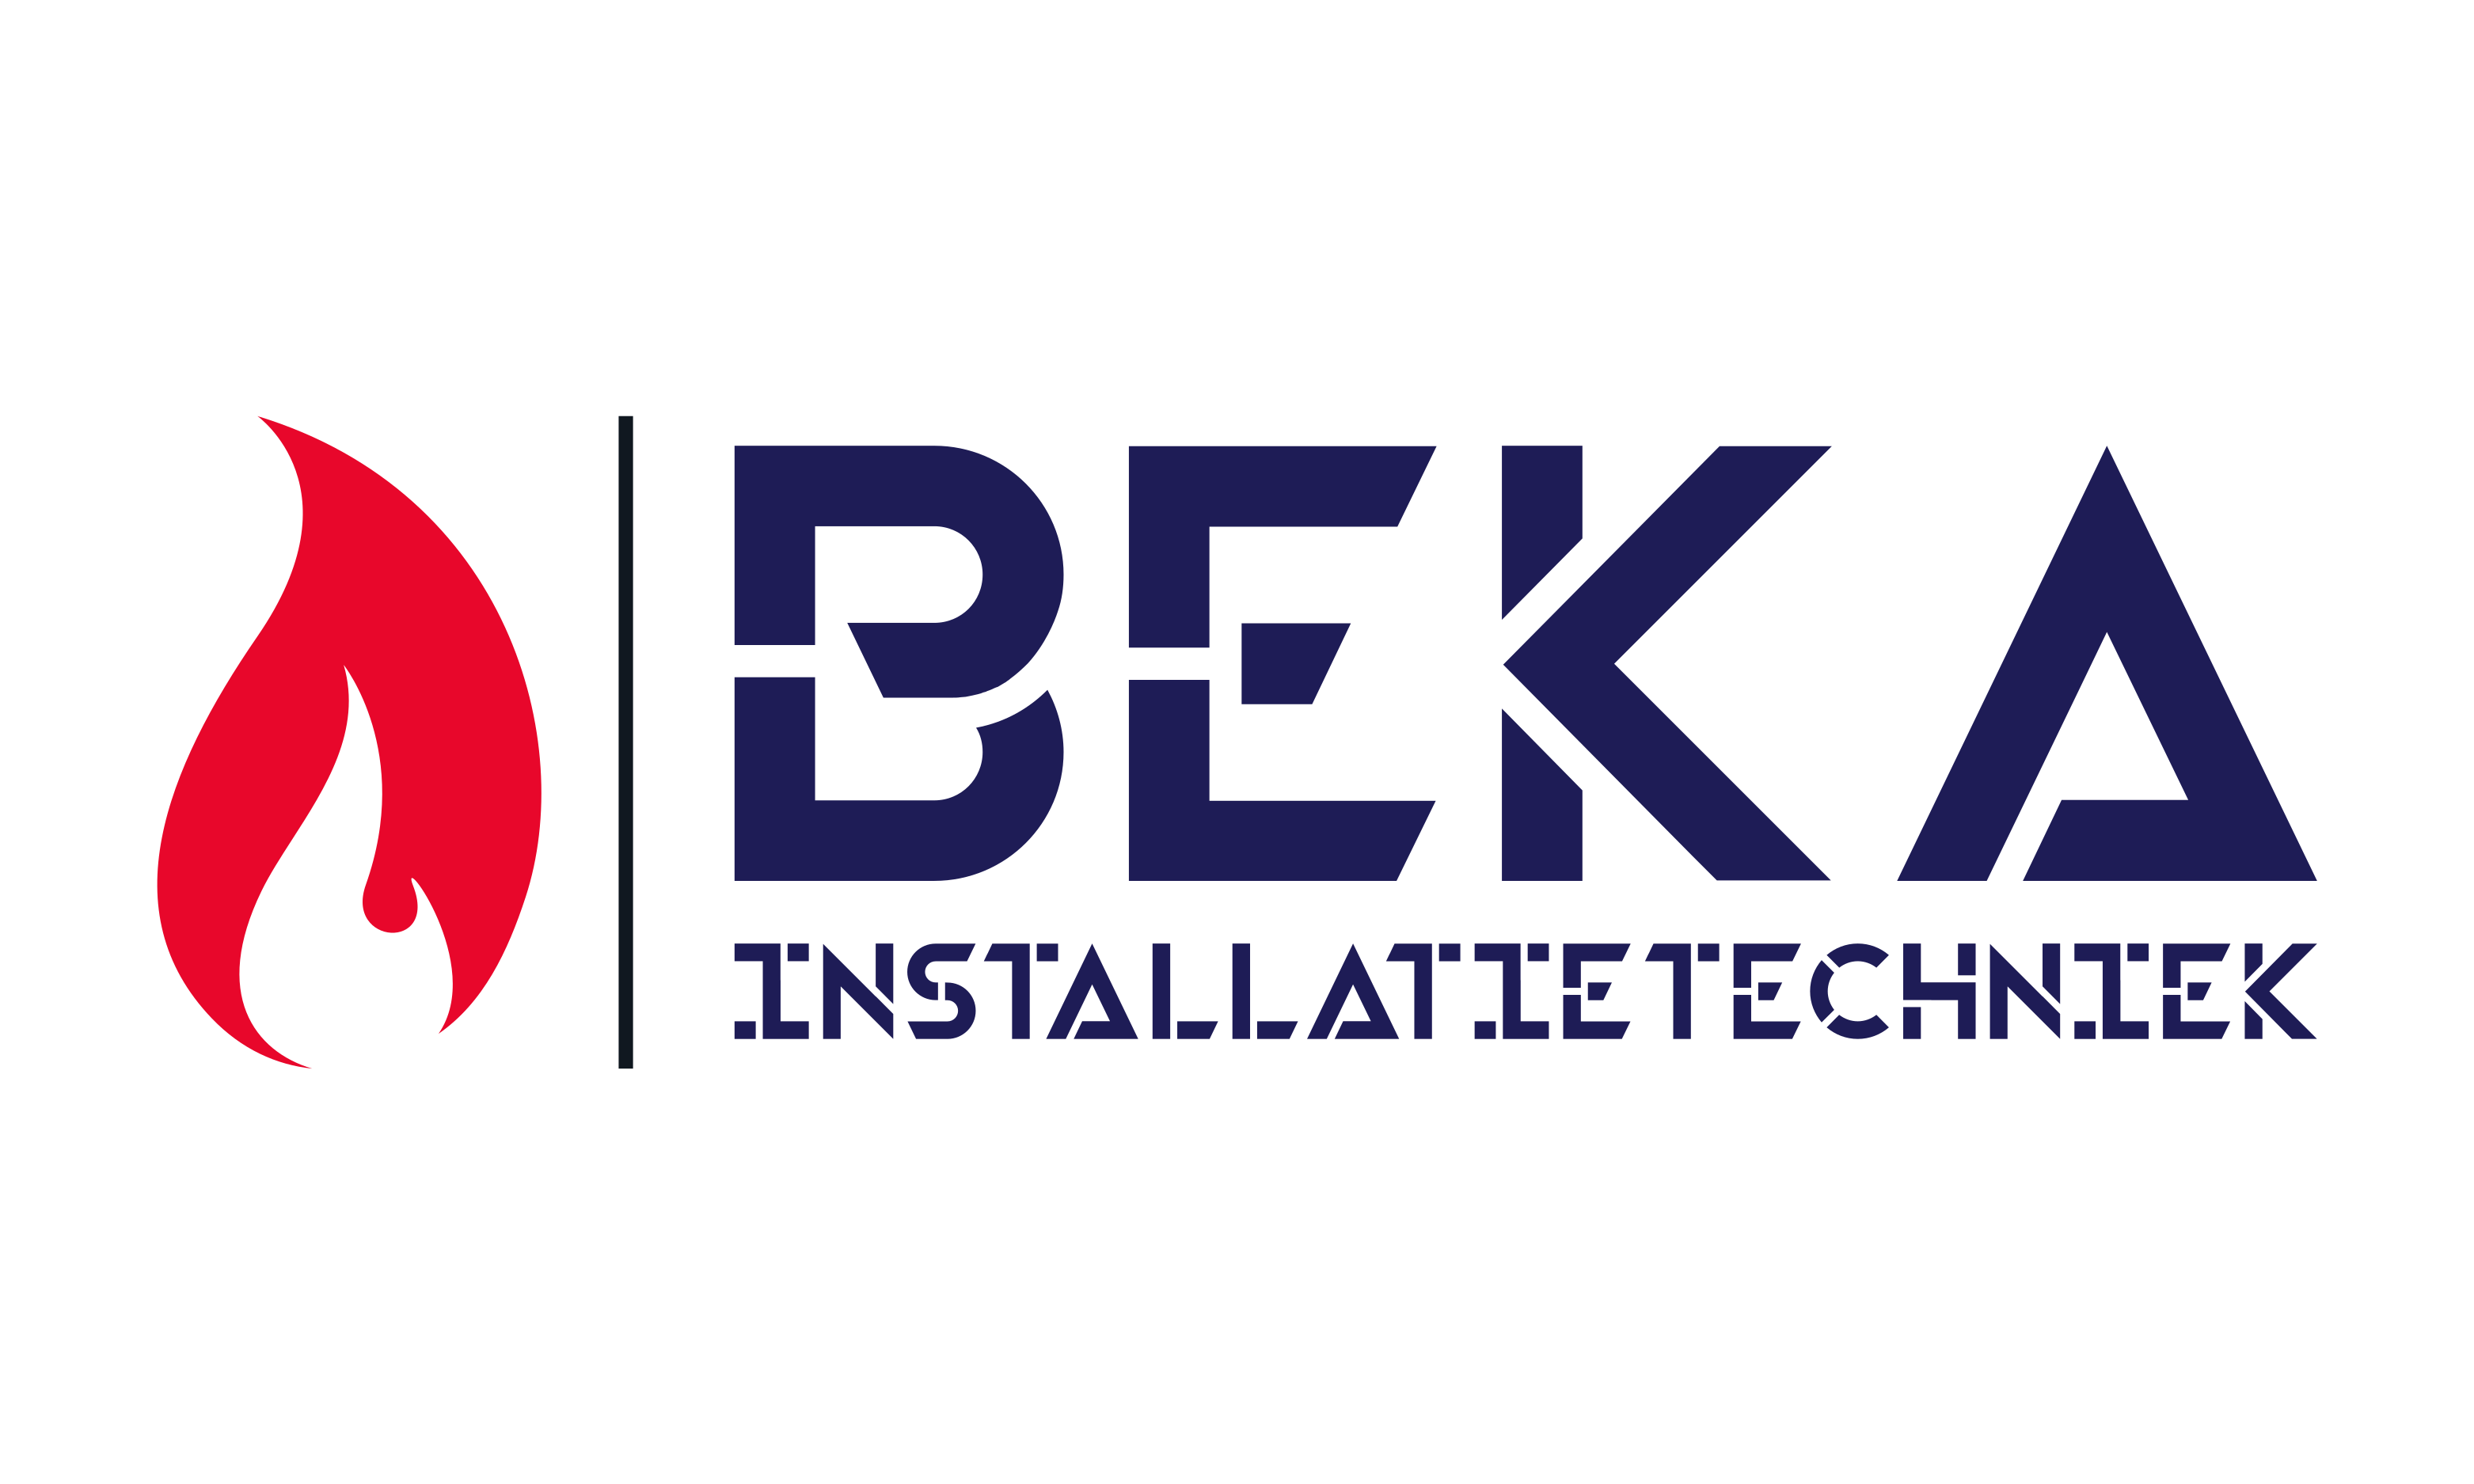 Beka Installatietechniek